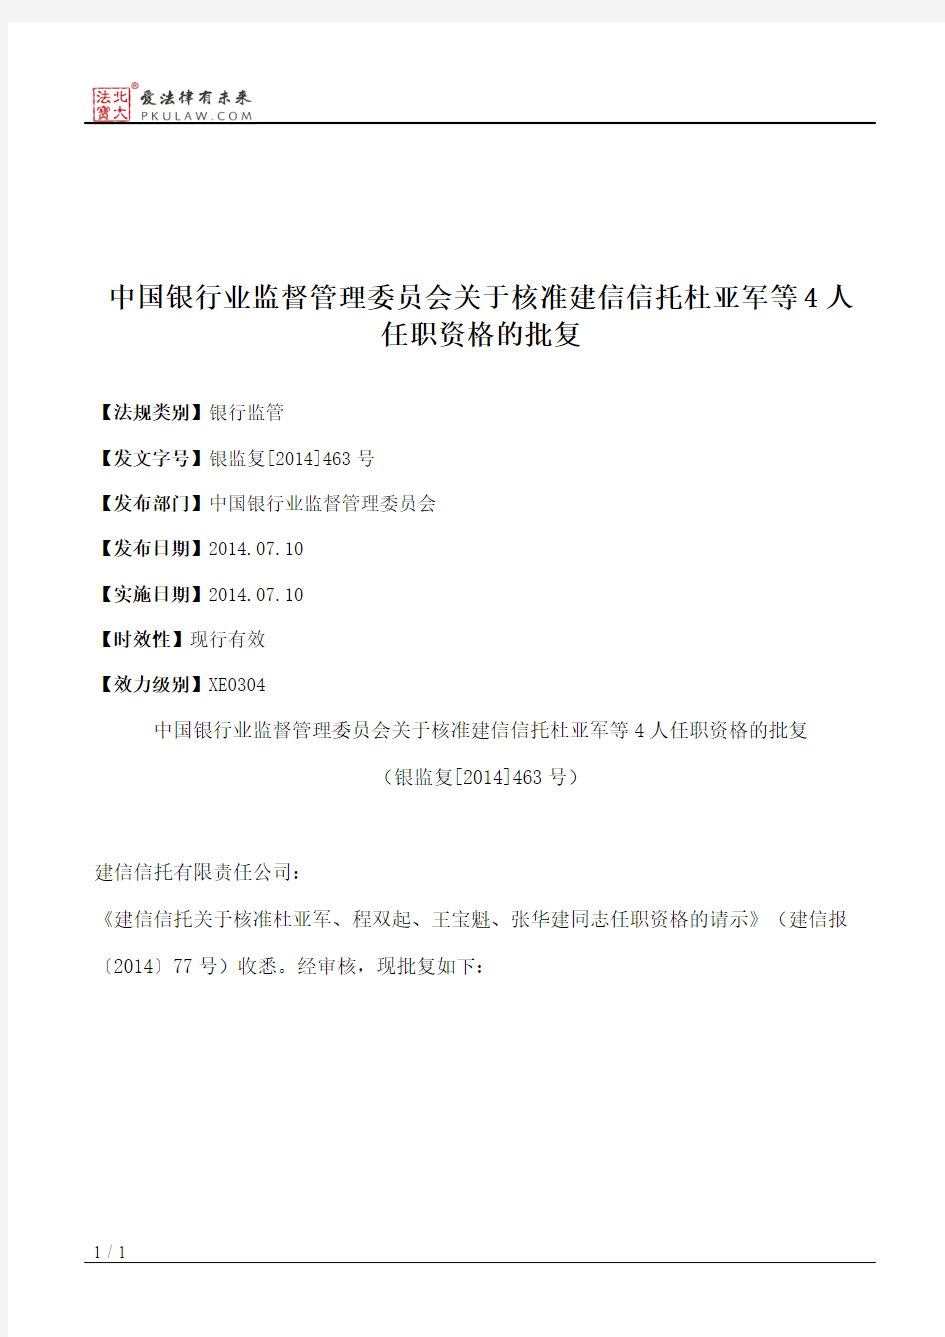 中国银行业监督管理委员会关于核准建信信托杜亚军等4人任职资格的批复